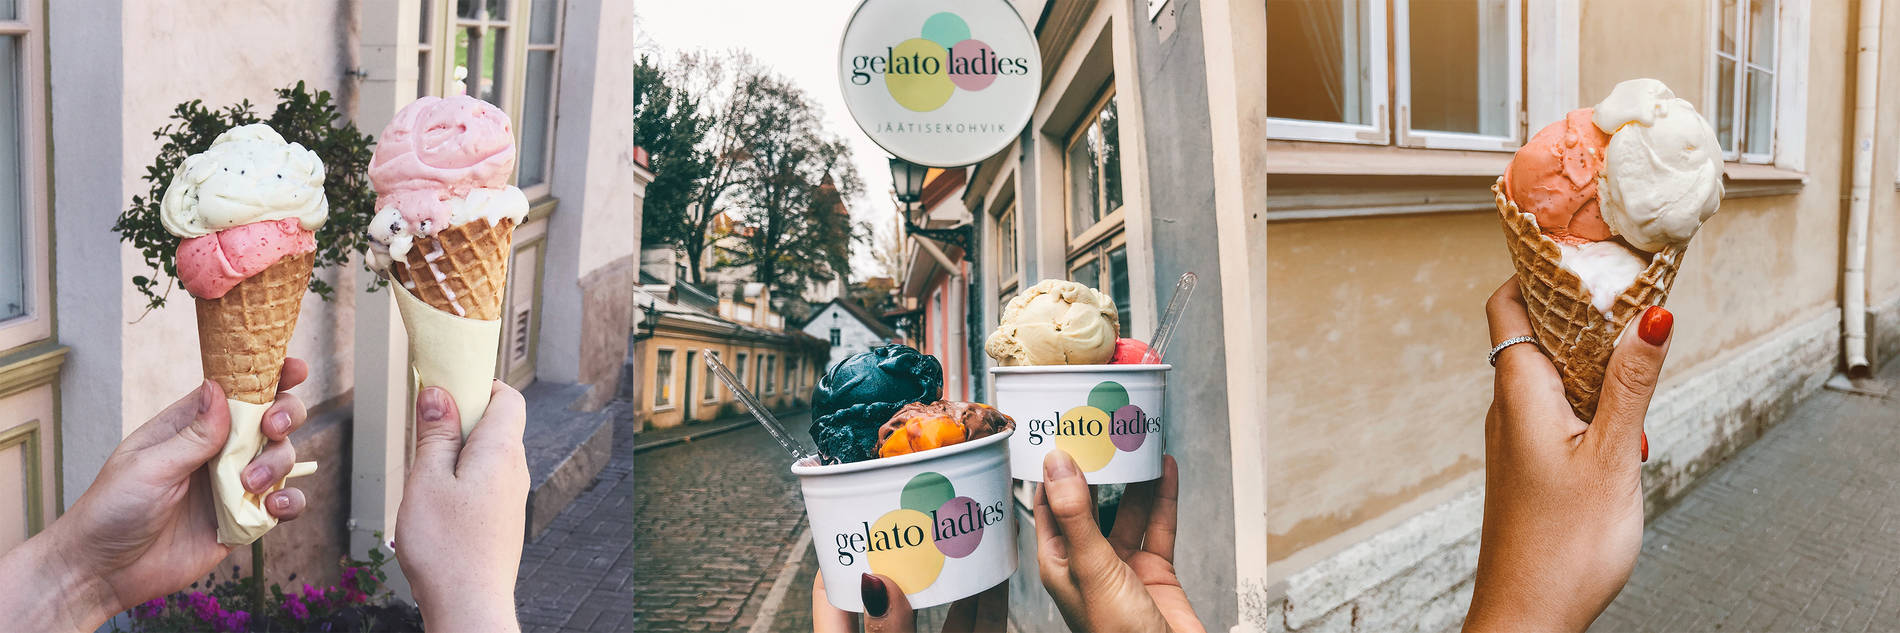 Gelato Ladies ice cream scones in Tallinn, Estonia Photo: 